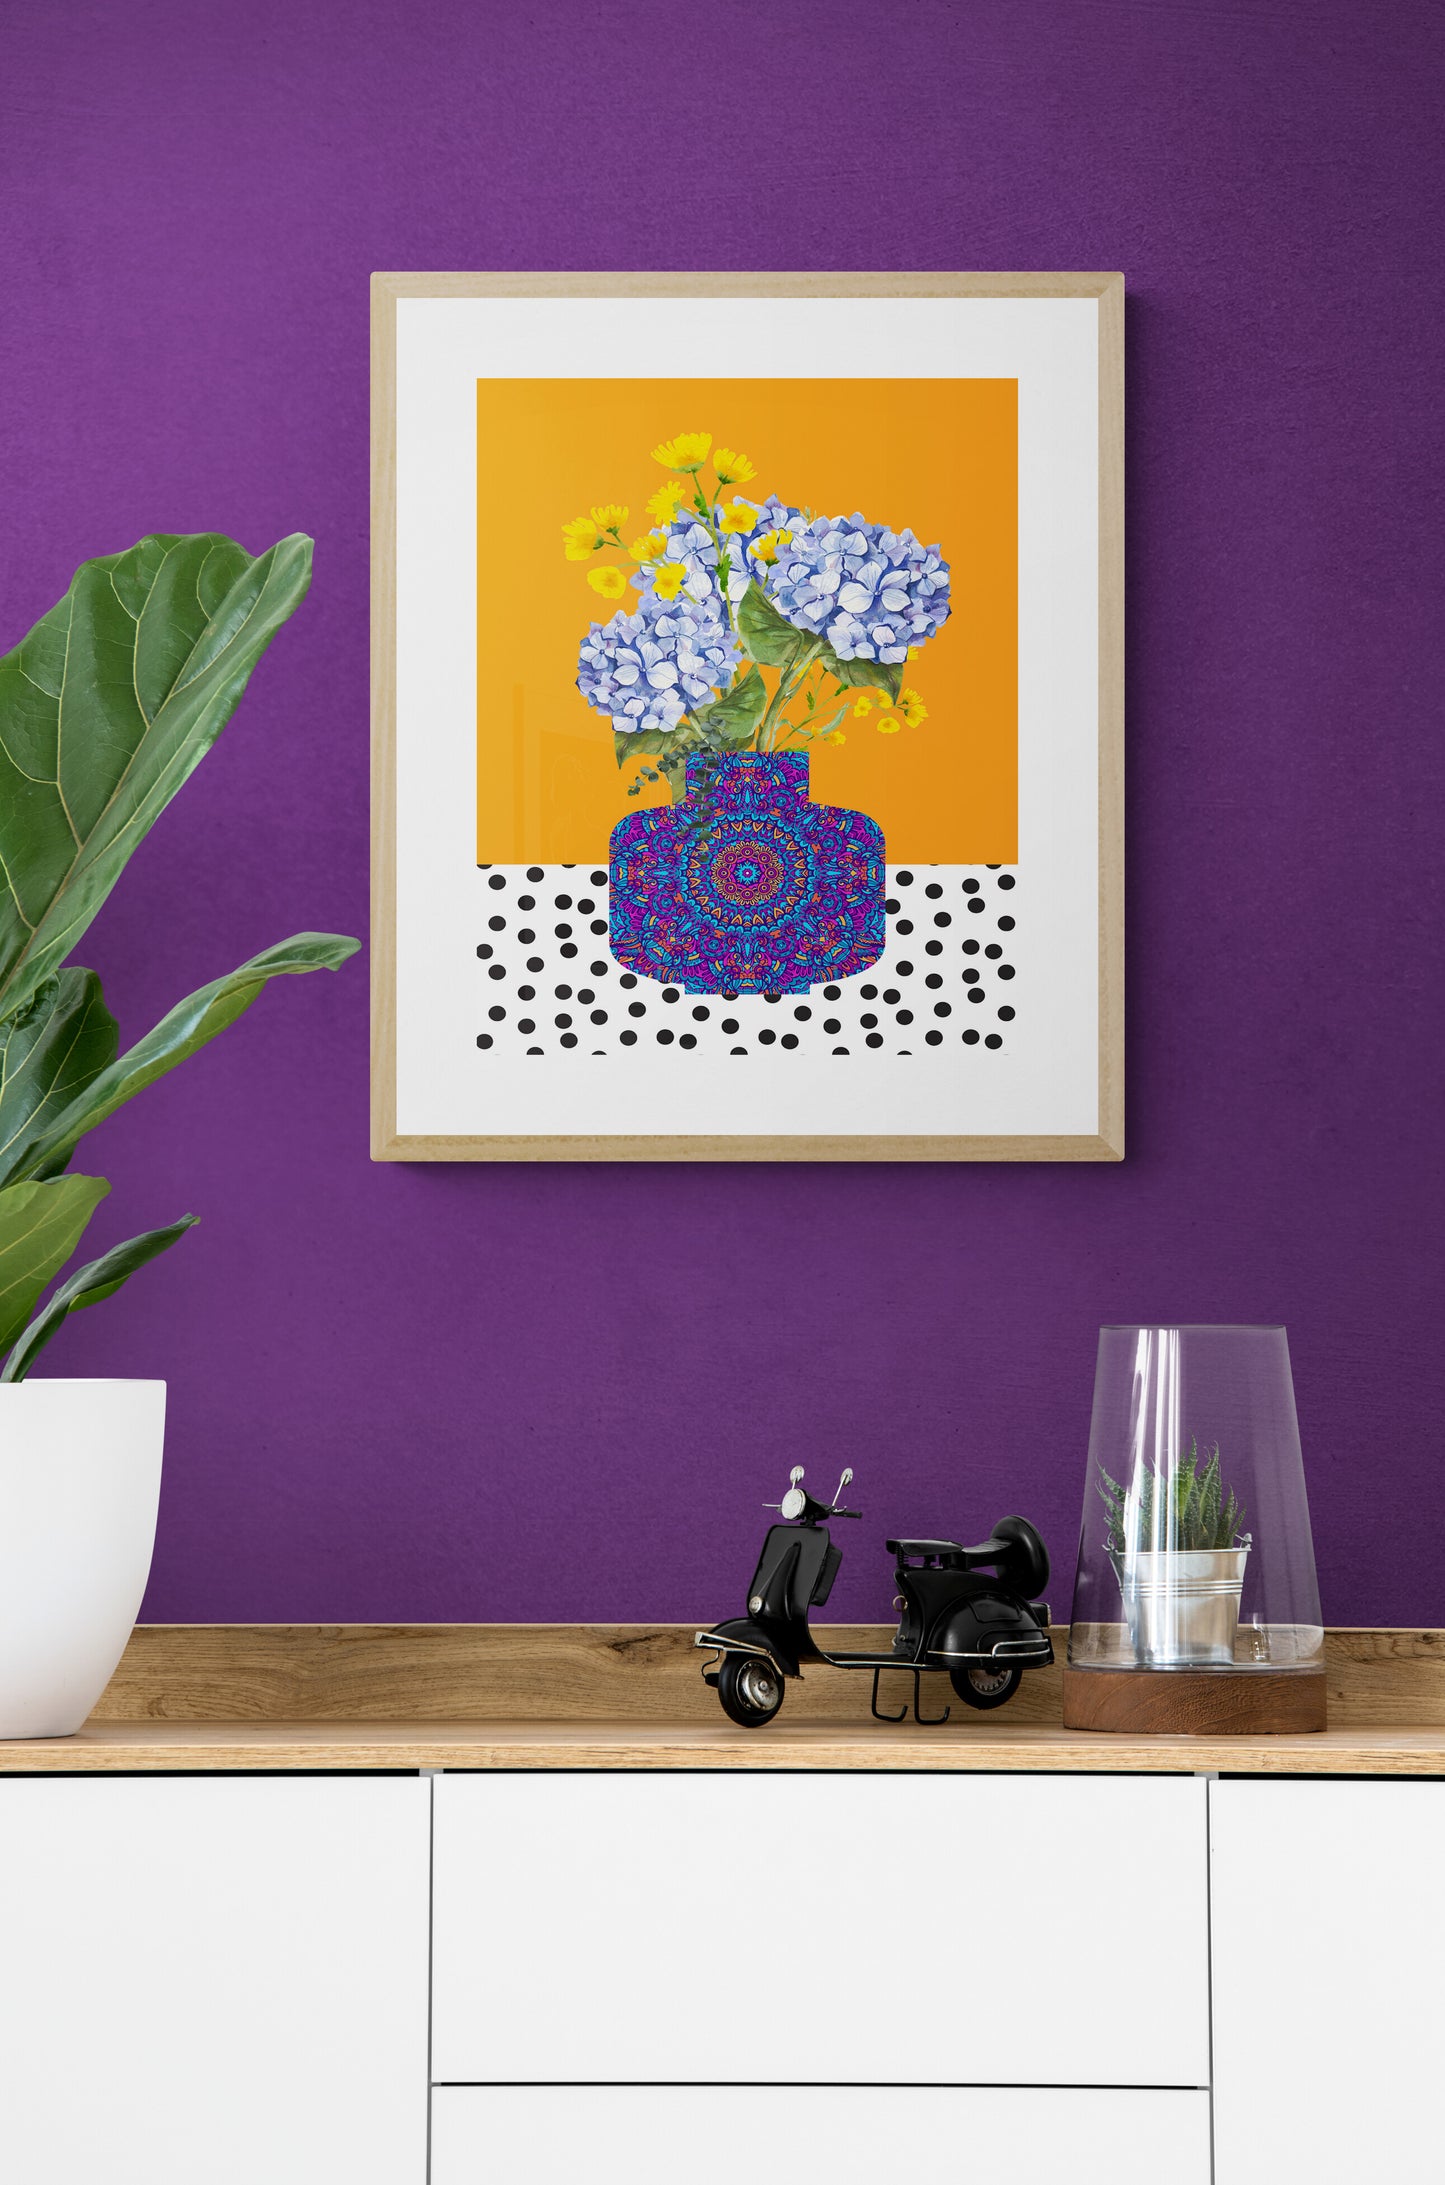 Blue Hydrangeas in Vase Still Life Print - Digital Download